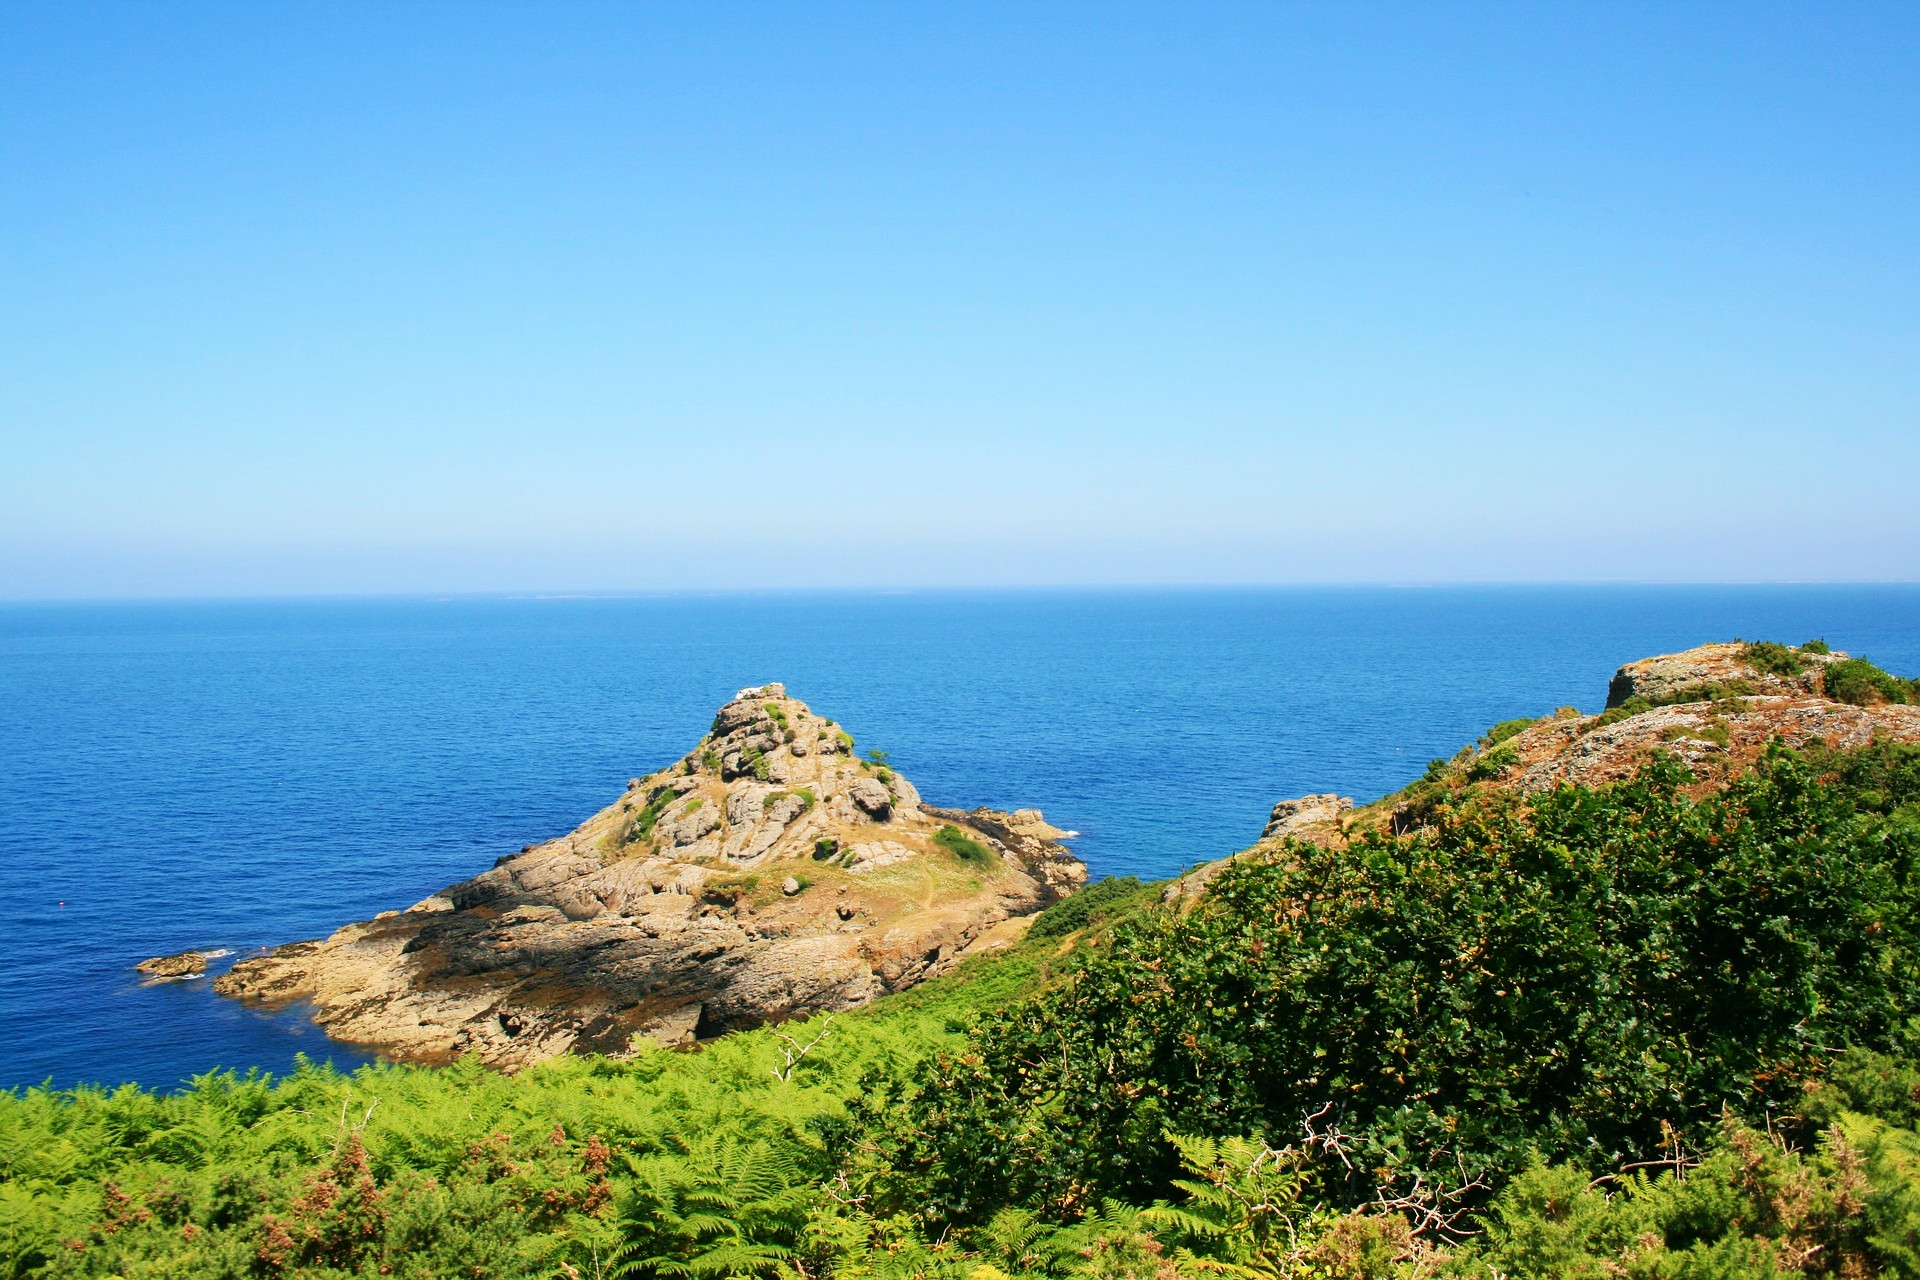 <img src="breathtaking.jpg" alt="breathtaking sea cliffs in Jersey"/> 